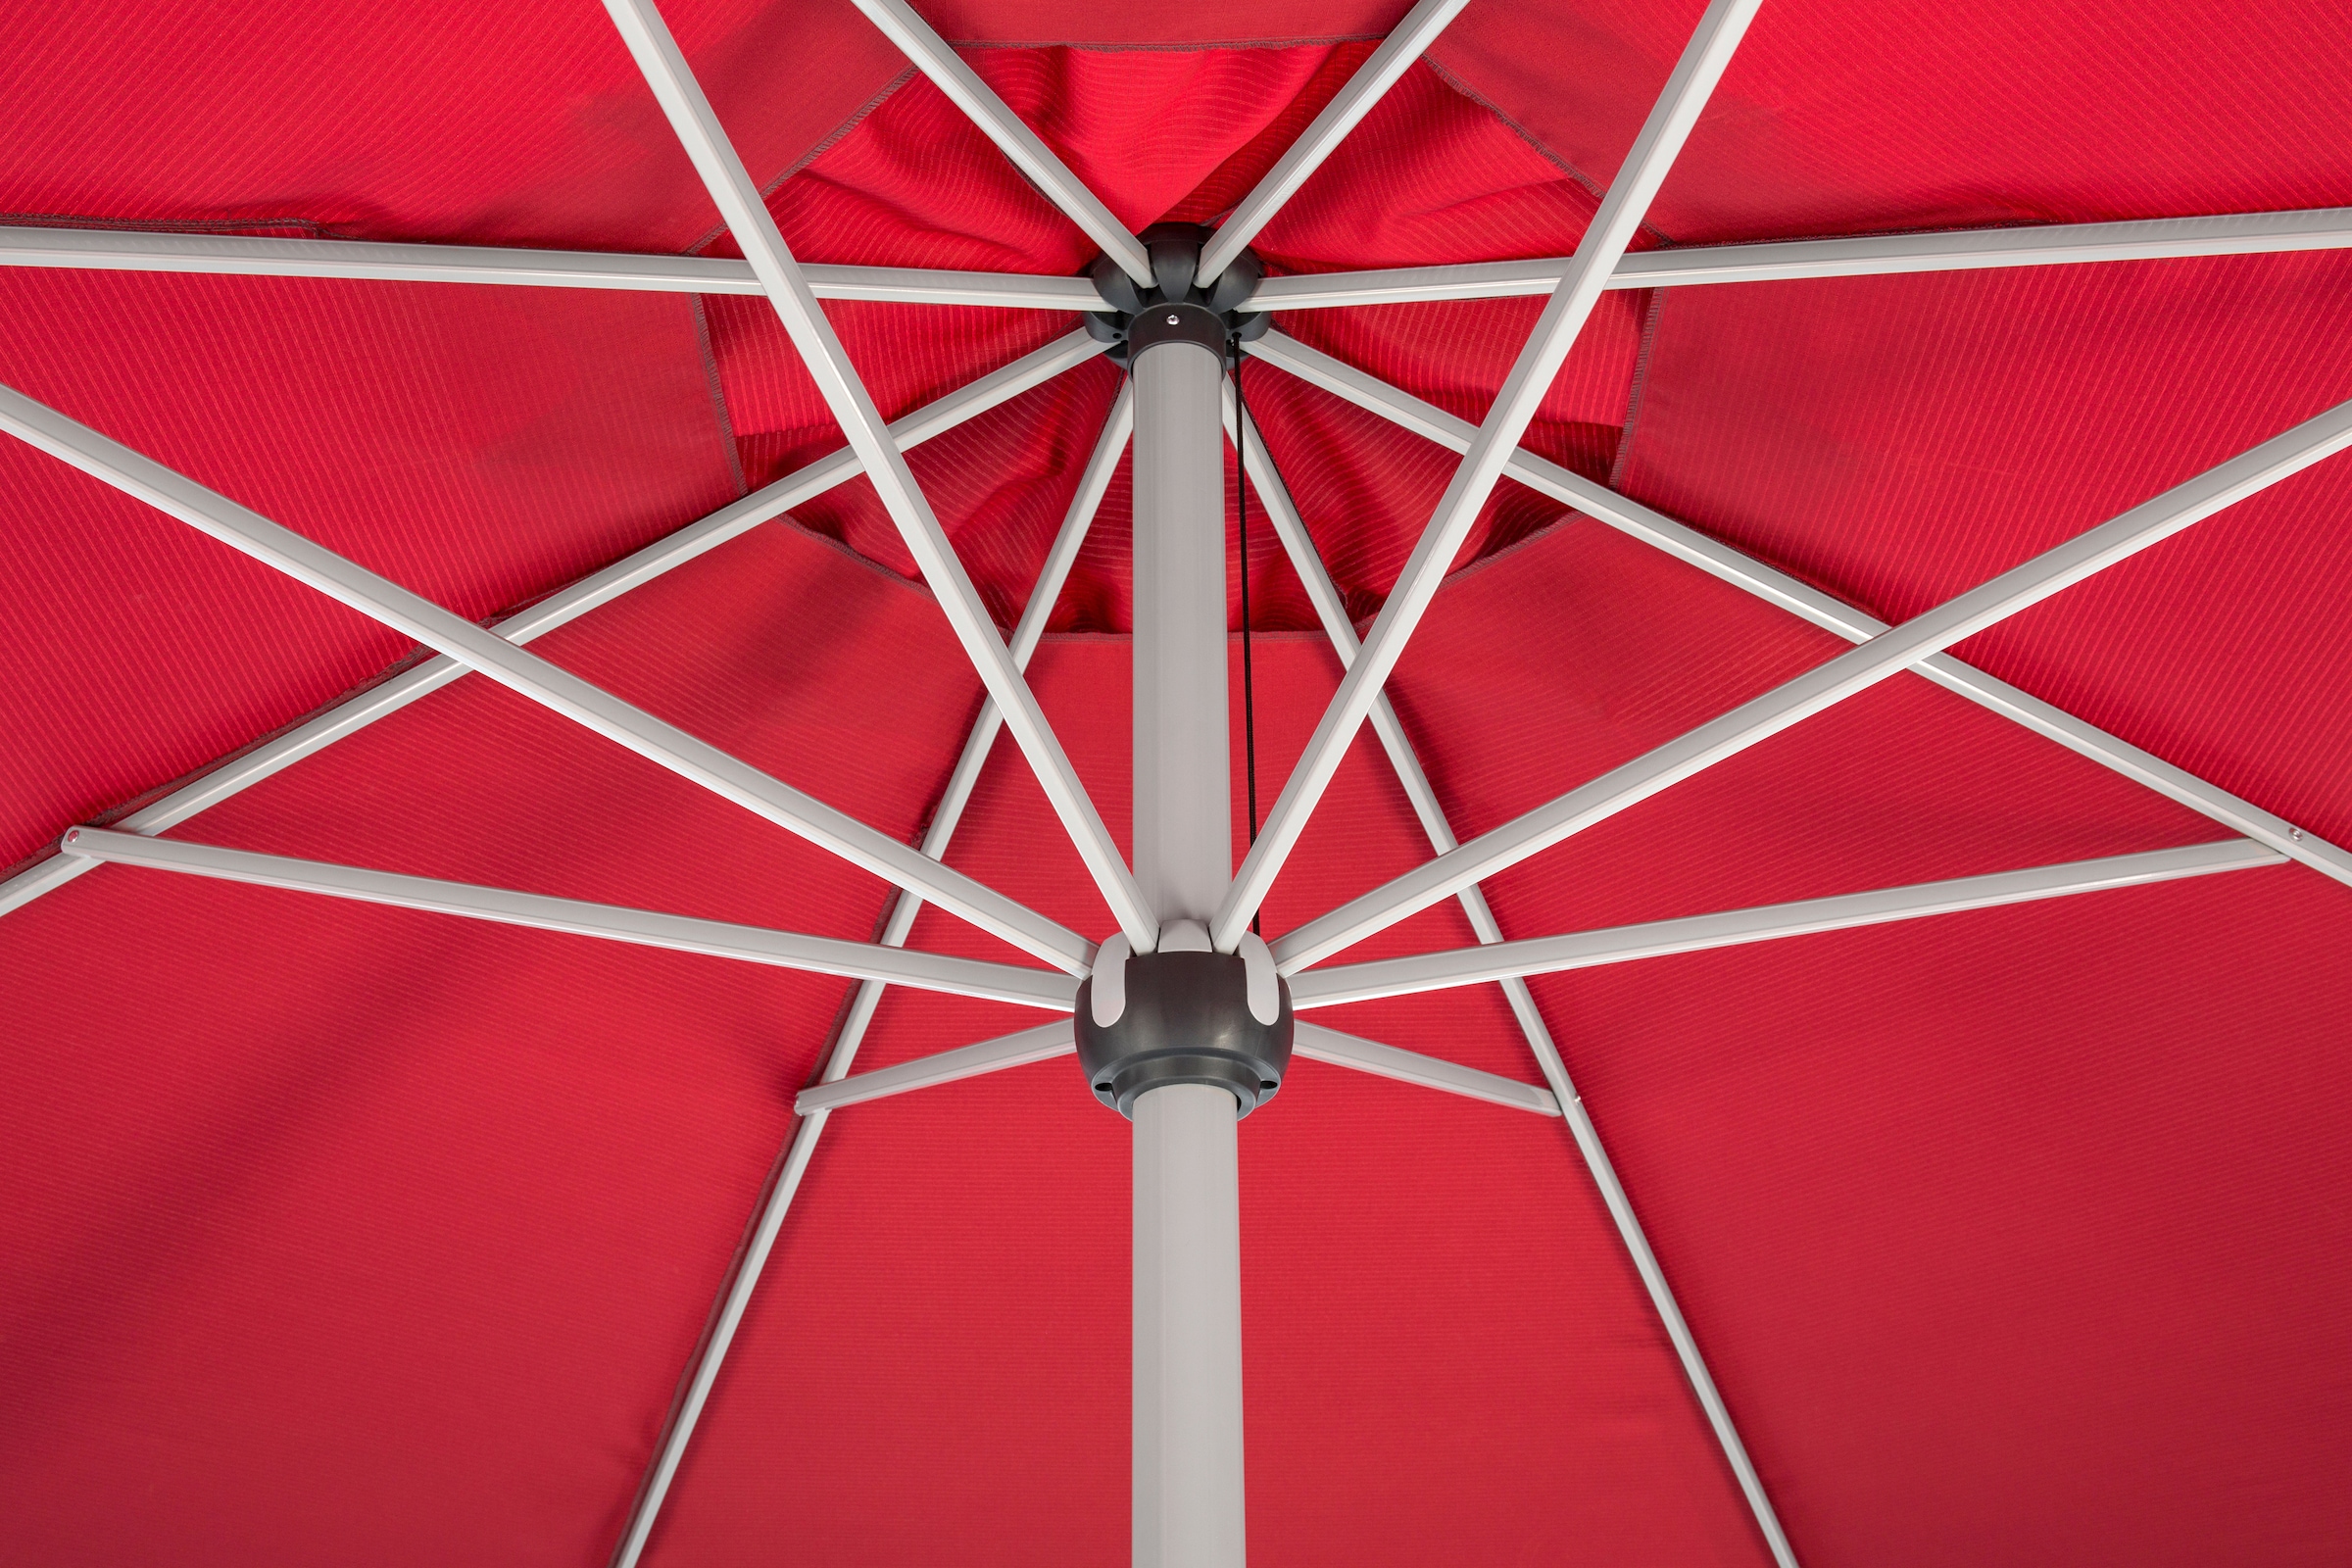 Schneider Schirme Sonnenschirm »Gemini«, ohne Schirmständer